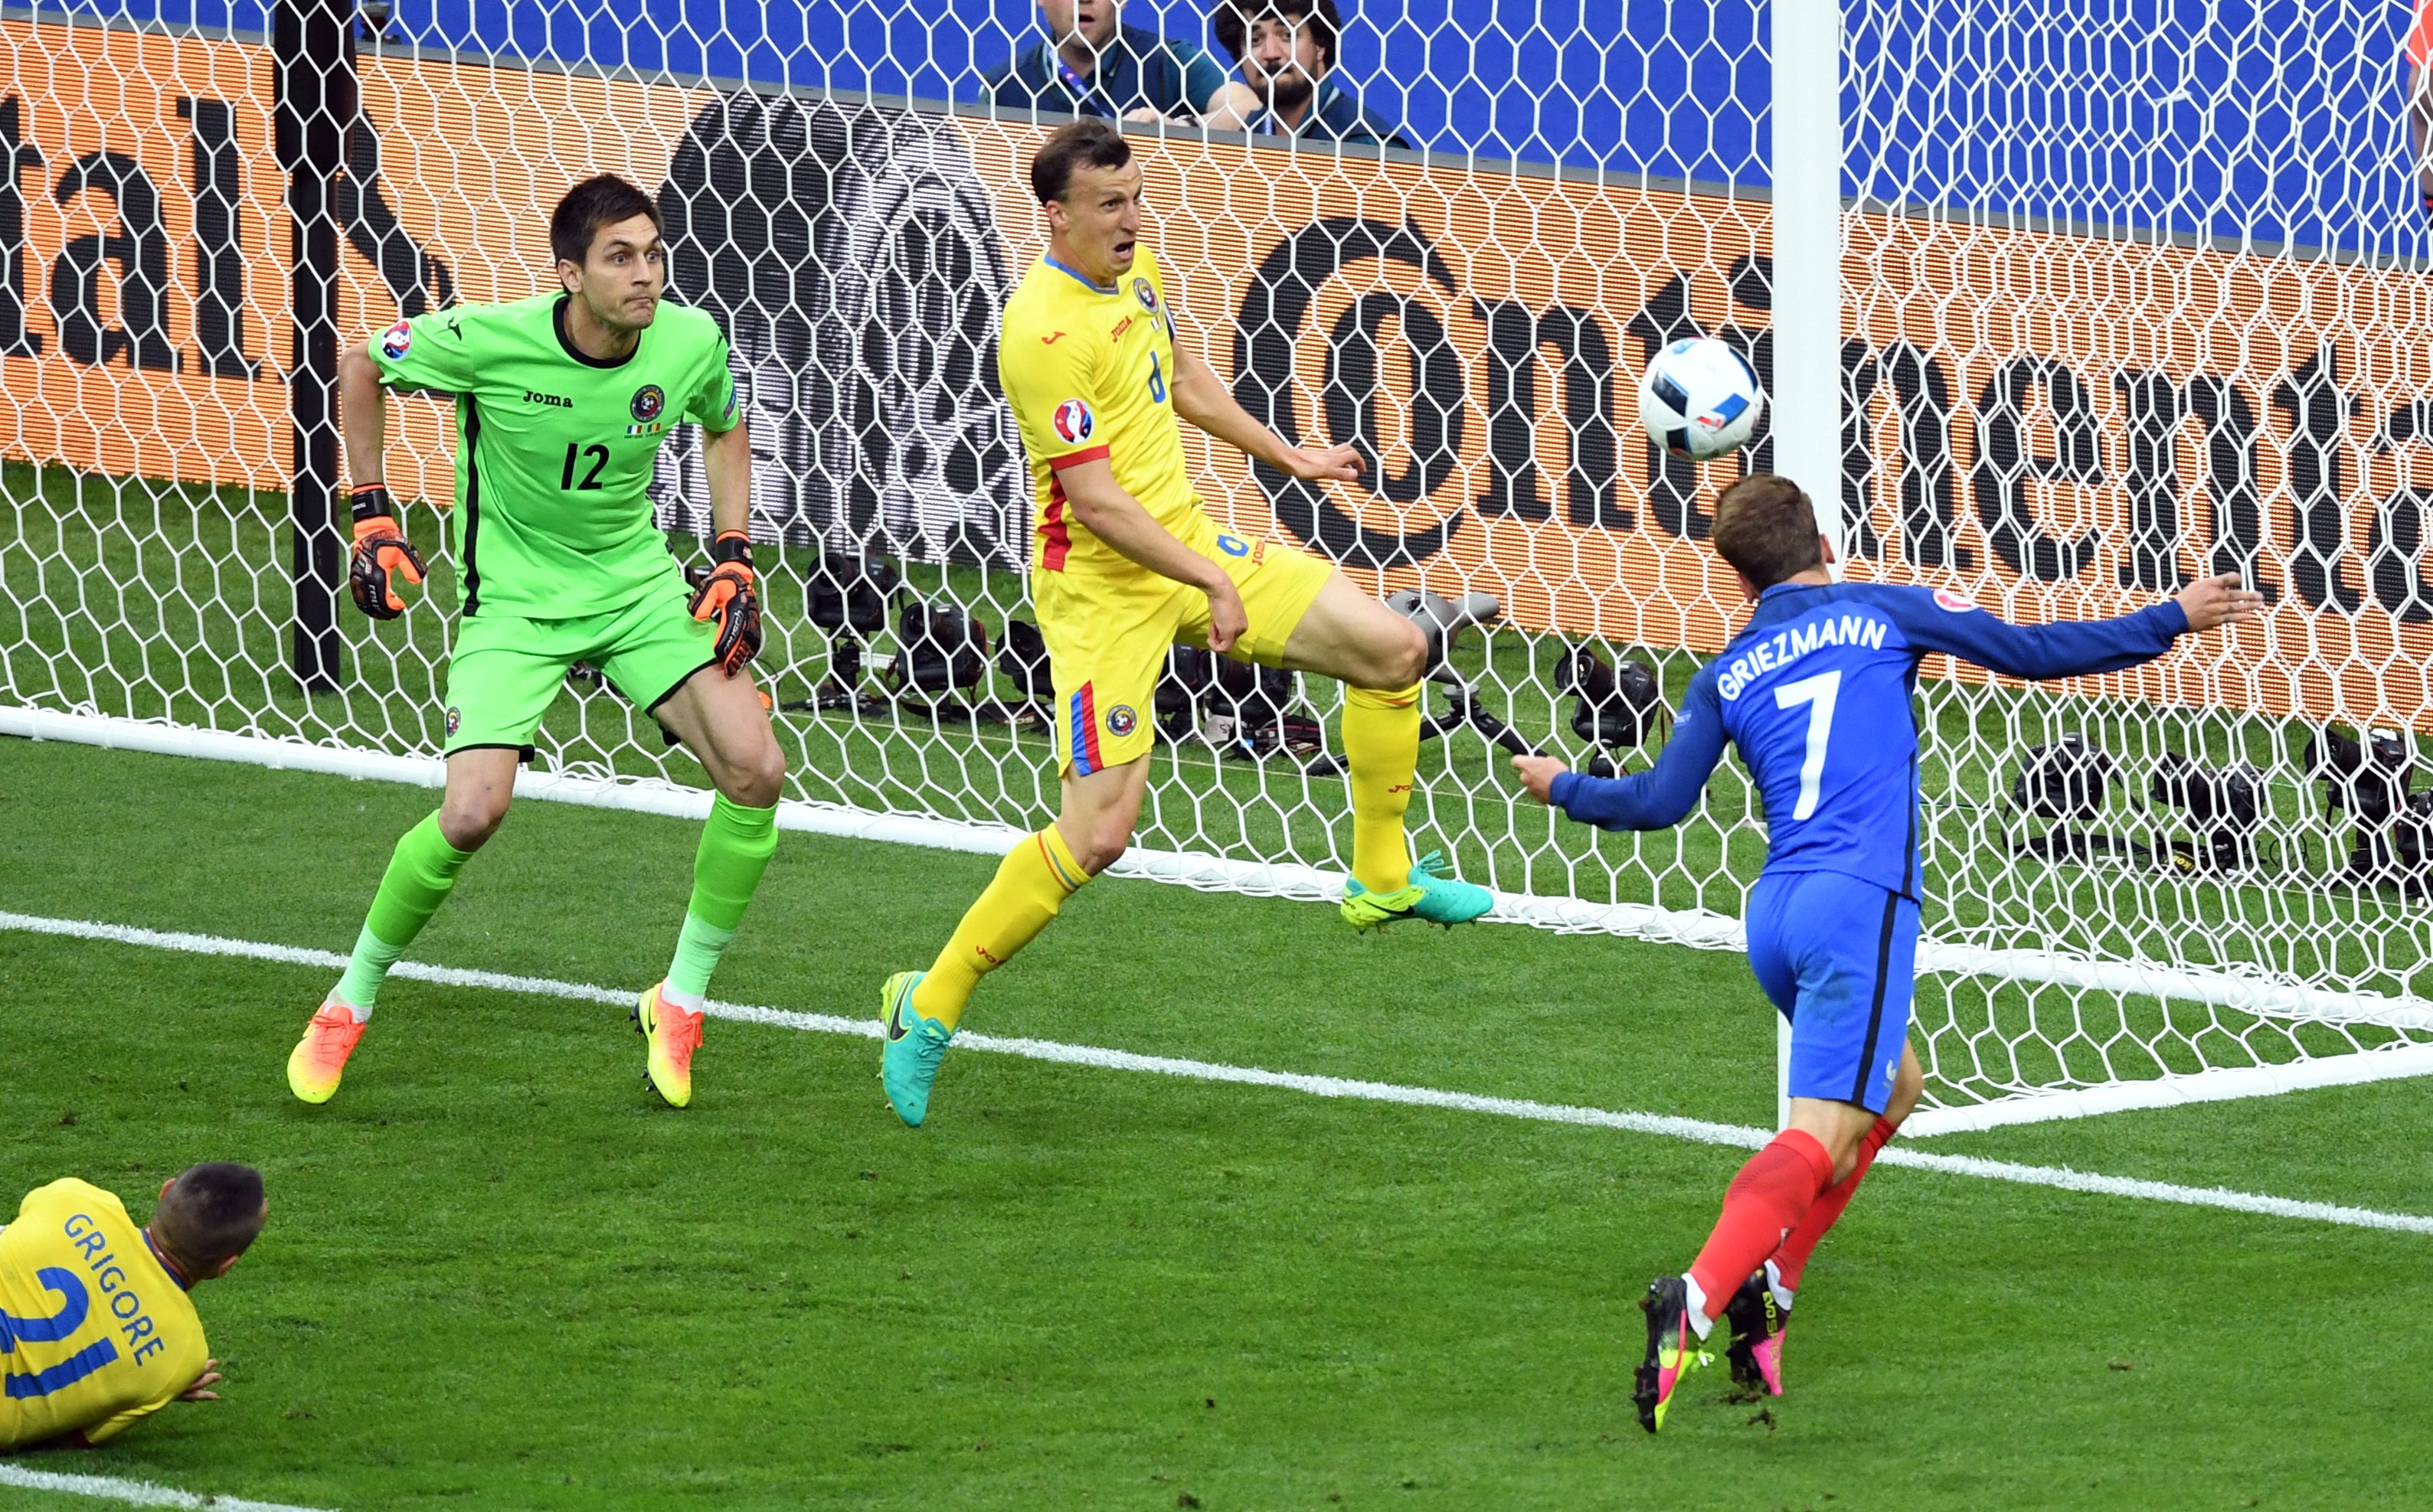 Хозяева ответили на 16-й минуте опасным ударом Гризманна. В этом эпизоде сборную Румынии от пропущенного мяча спас Кирикеш, рикошетом от которого мяч угодил в штангу.